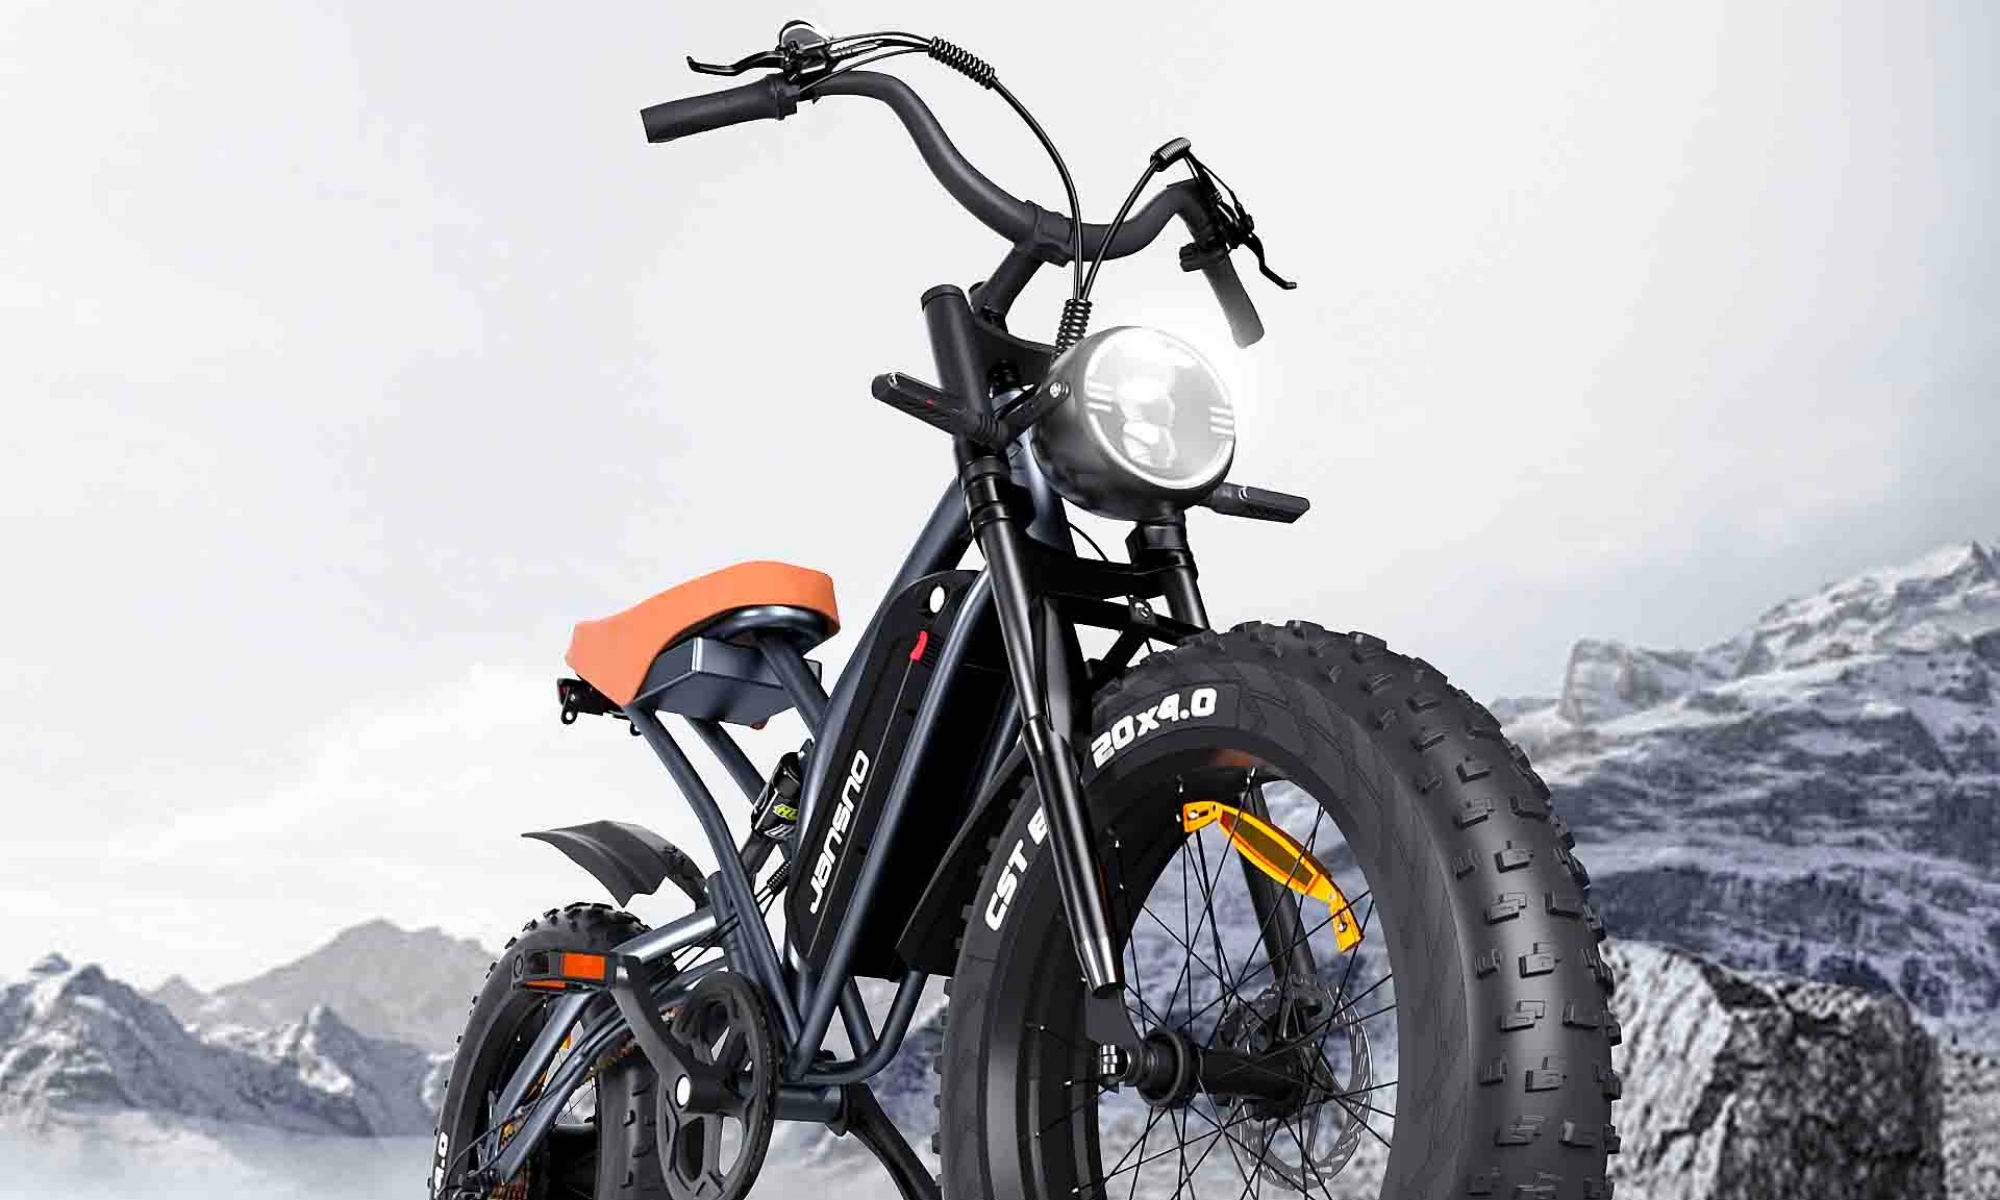 Se articula en torno al concepto de una 'fat bike', con gruesos neumáticos orientados al uso fuera de la carretera.